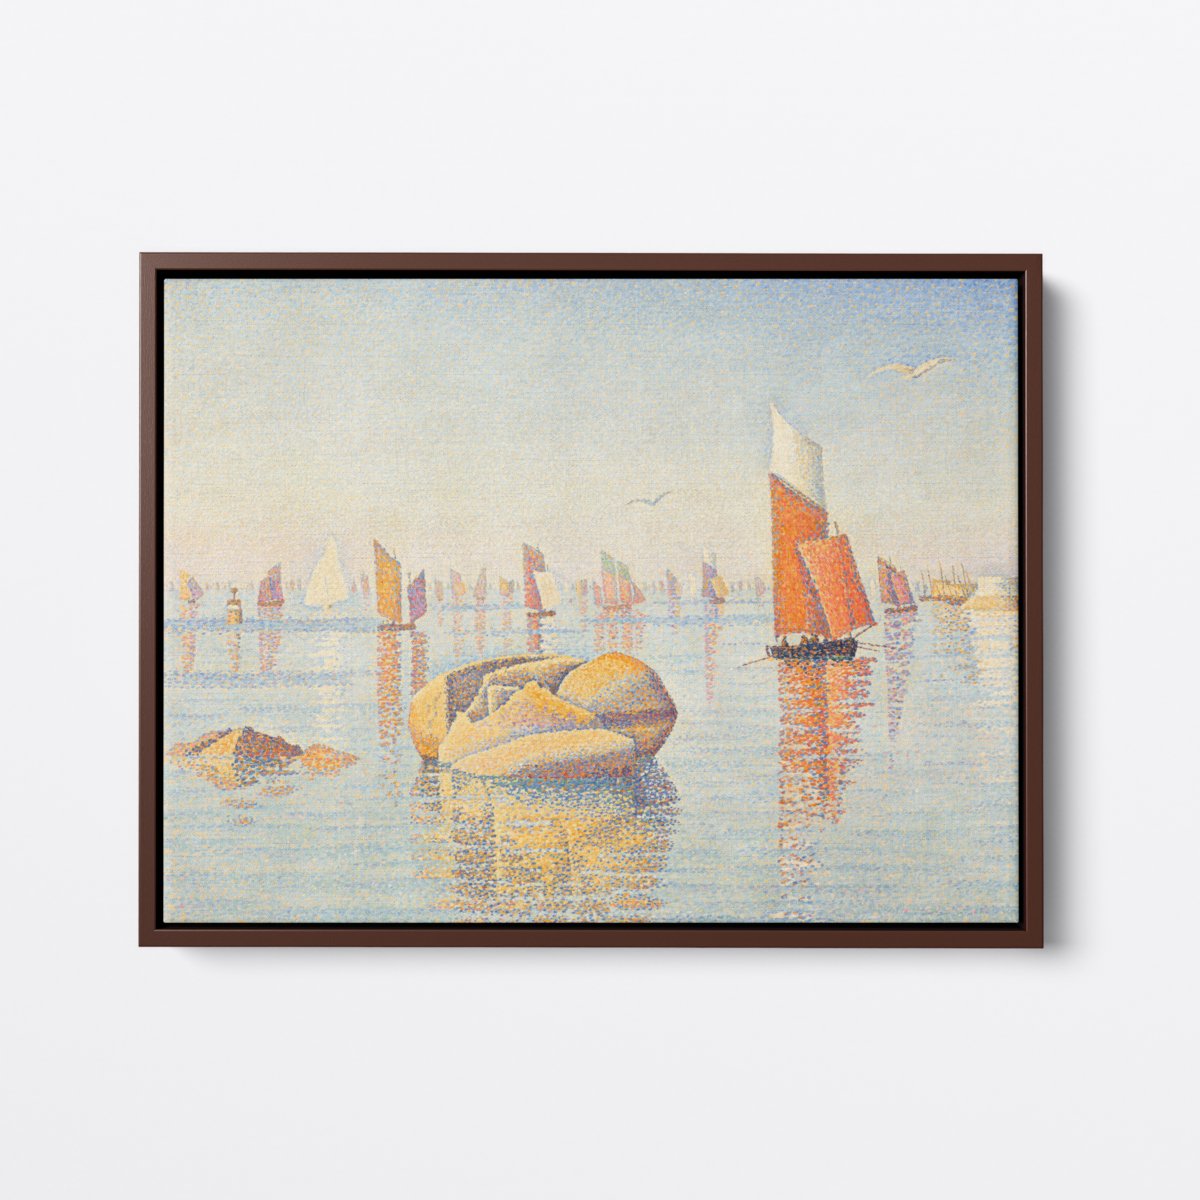 Corcaneau Calm Seas | Paul Signac | Ave Legato | Canvas Art Prints | Vintage Artwork